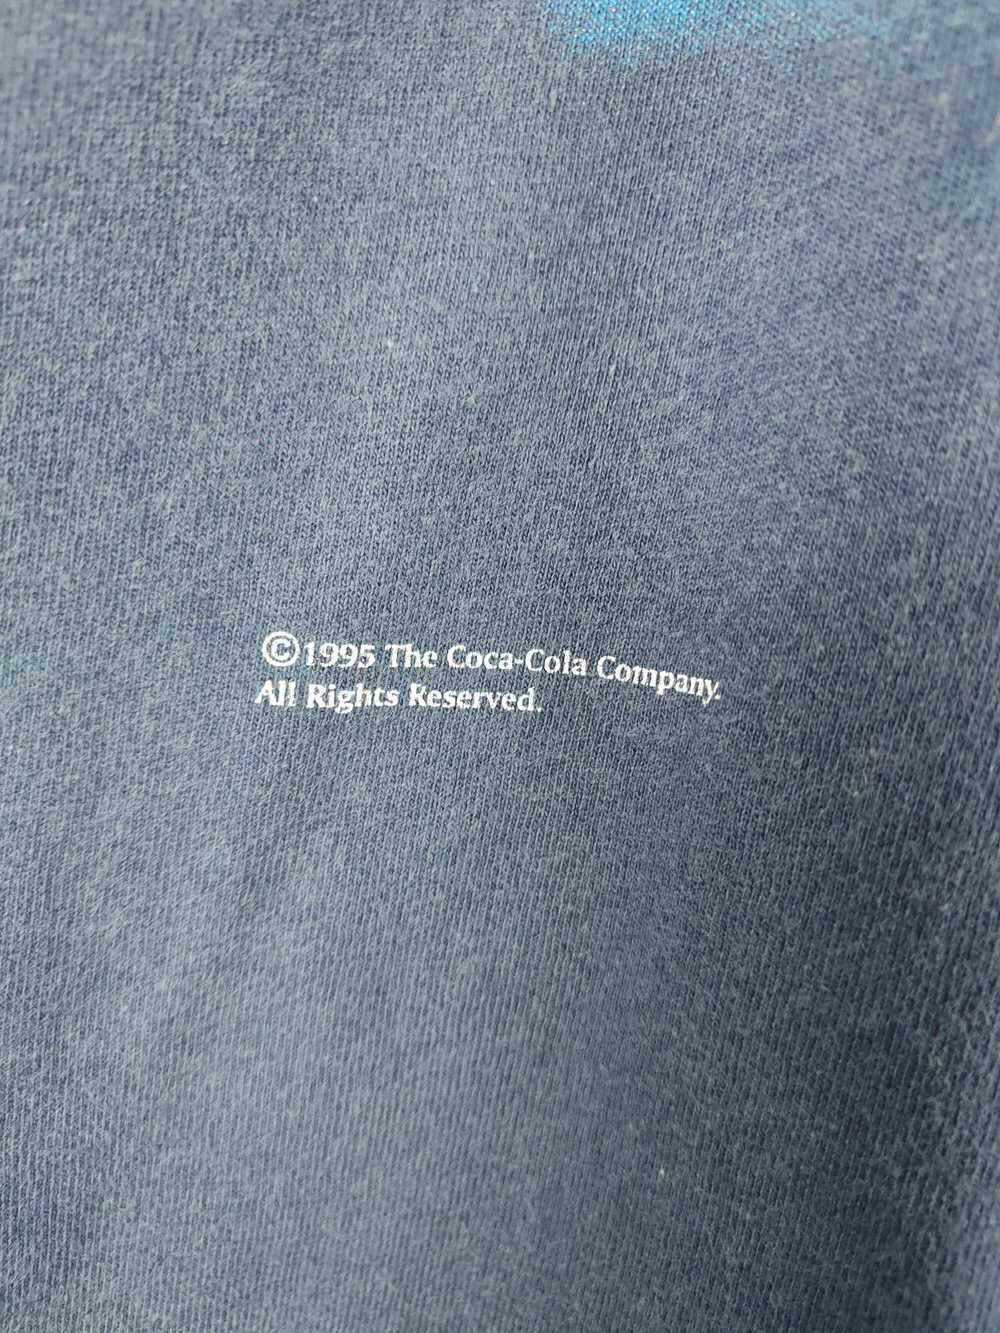 1990x Clothing × Coca Cola × Vintage 1995 Coco Co… - image 3